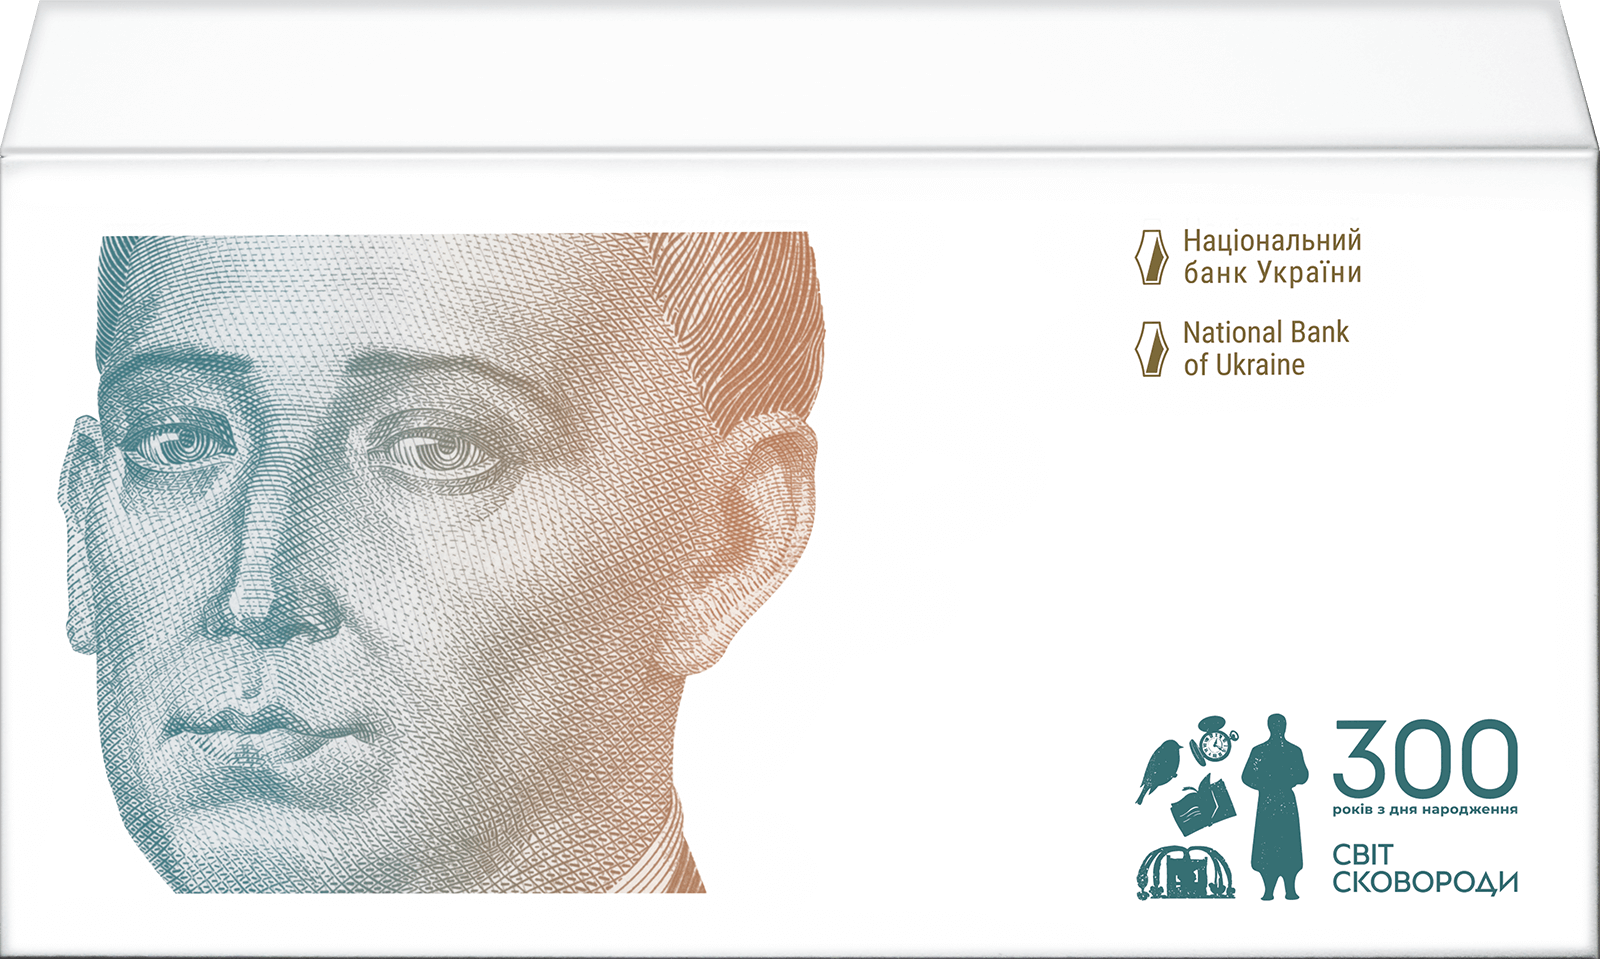 Пам`ятна банкнота номіналом 500 гривень зразка 2015 року до 300-річчя від дня народження Григорія Сковороди (у конверті) (реверс)